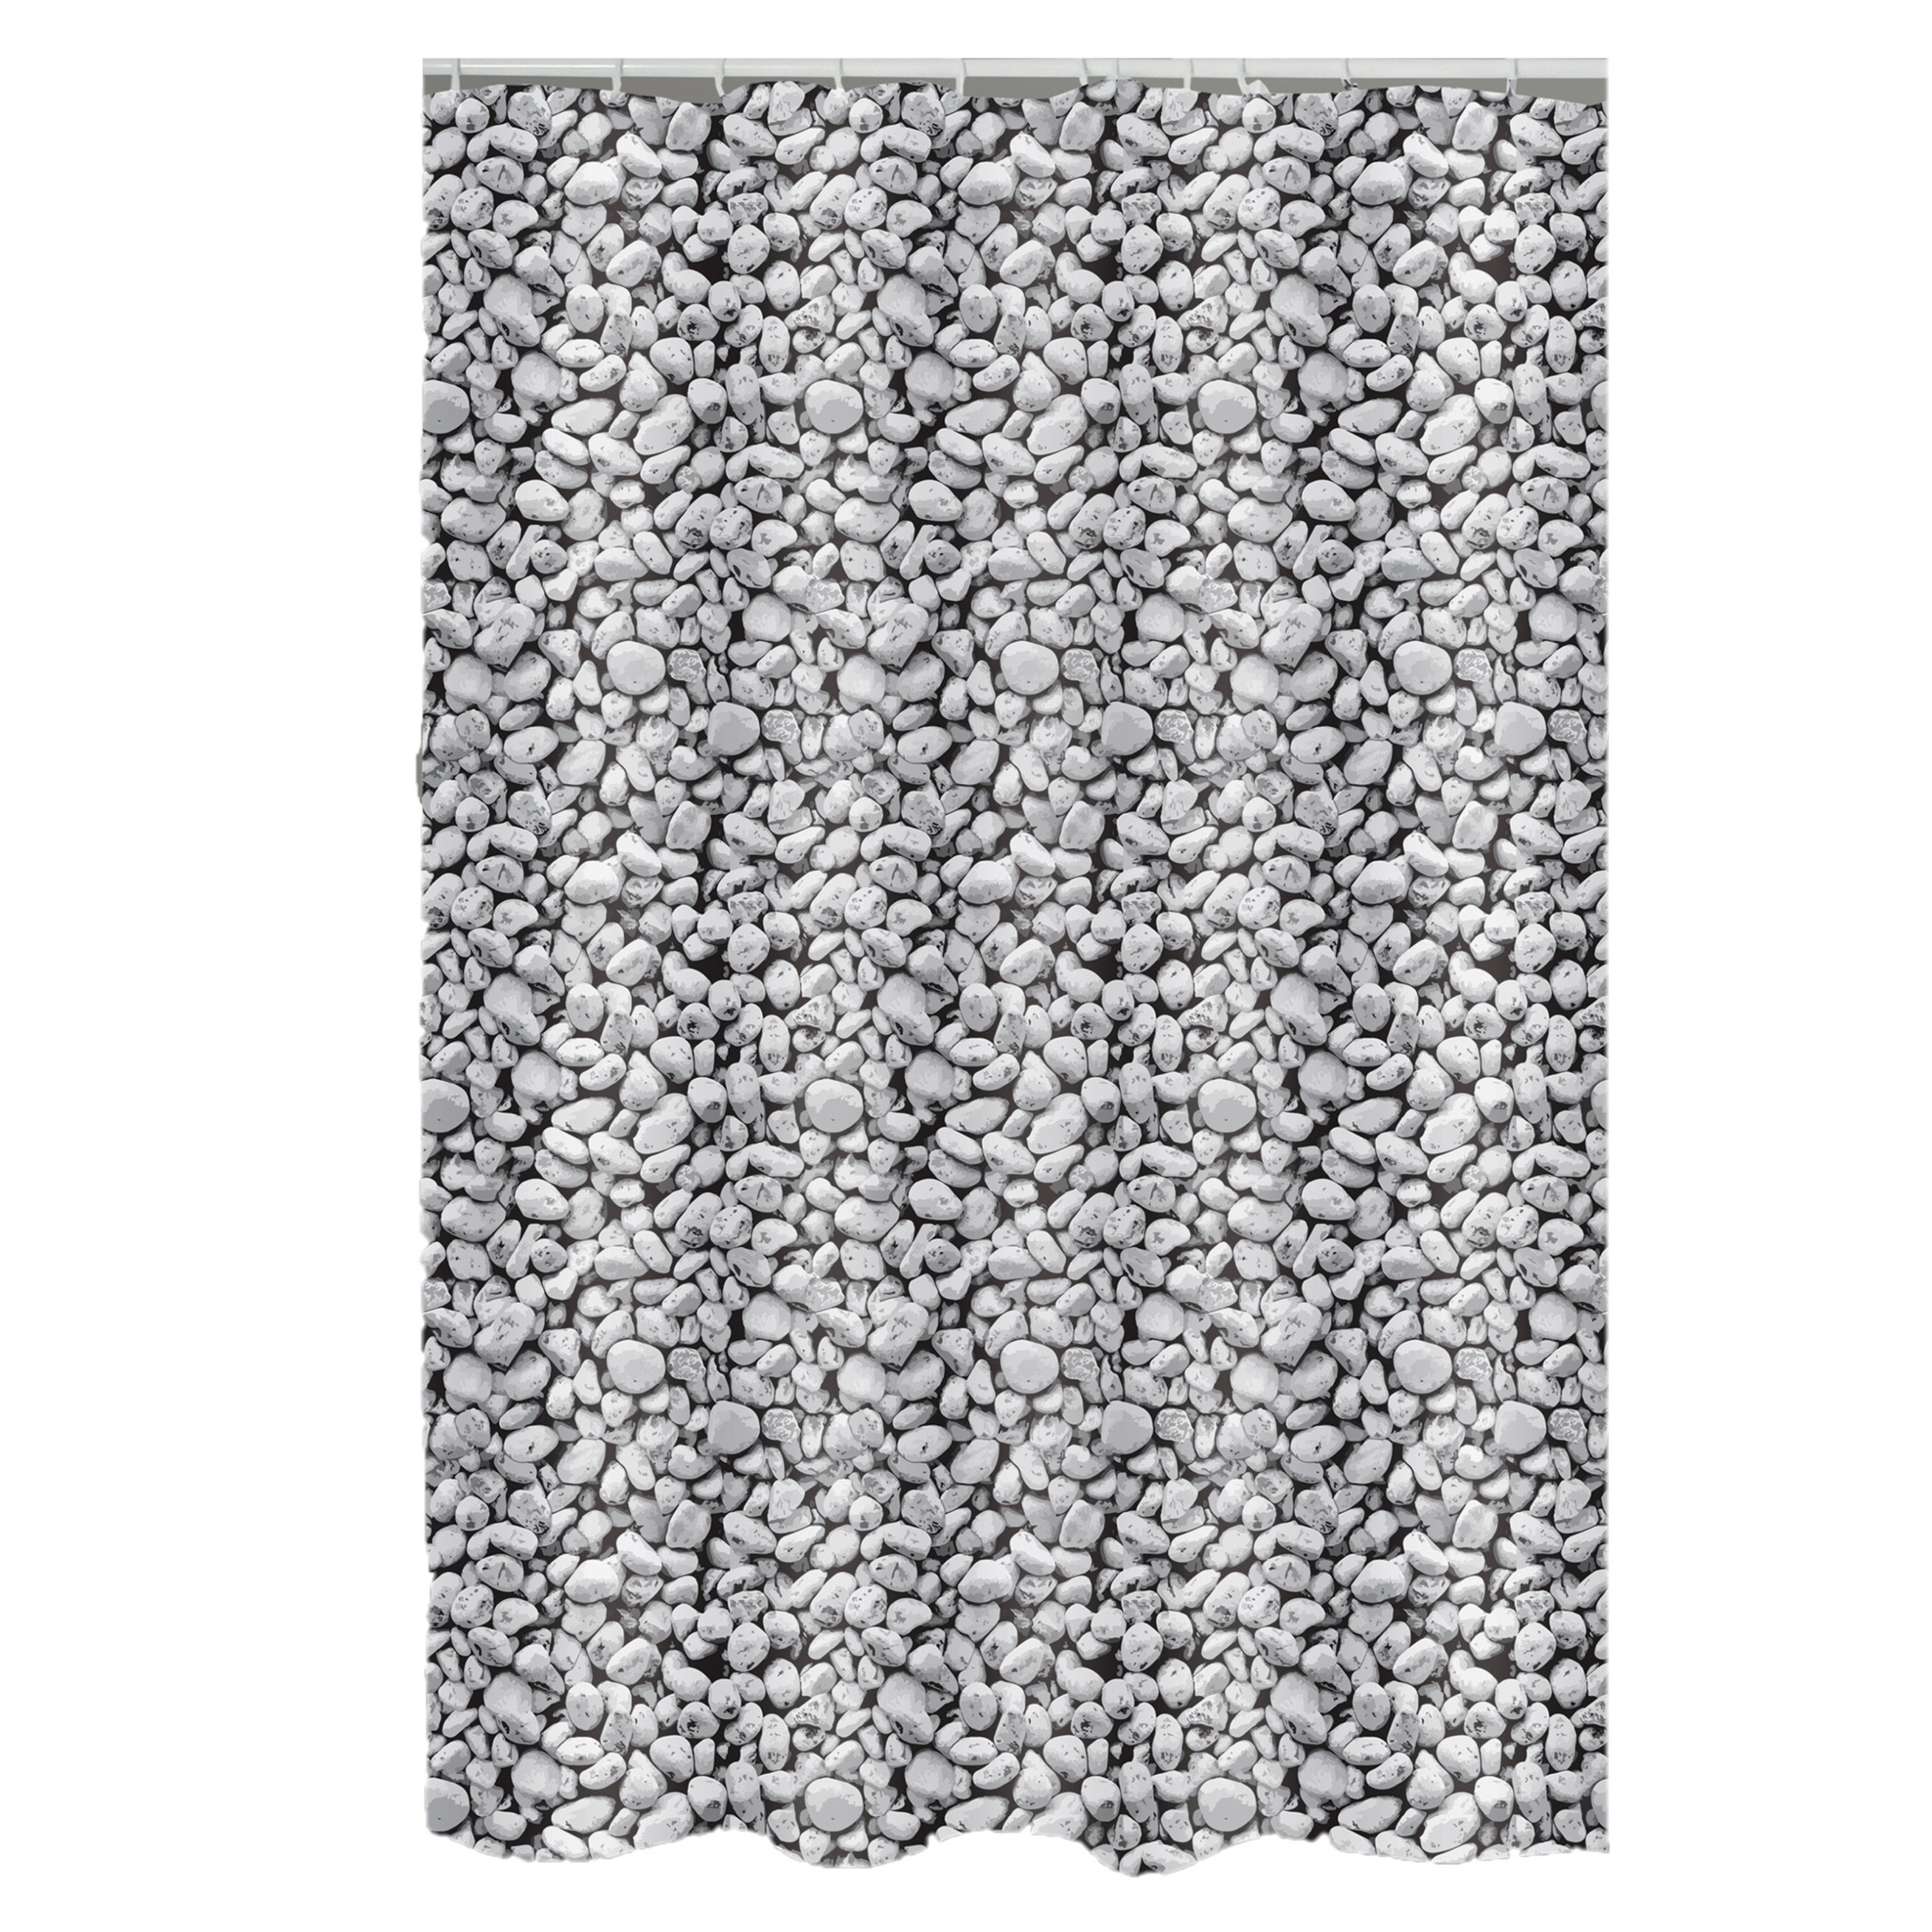 MSV Douchegordijn met ringen grijs kiezels print Polyester 180 x 200 cm wasbaar